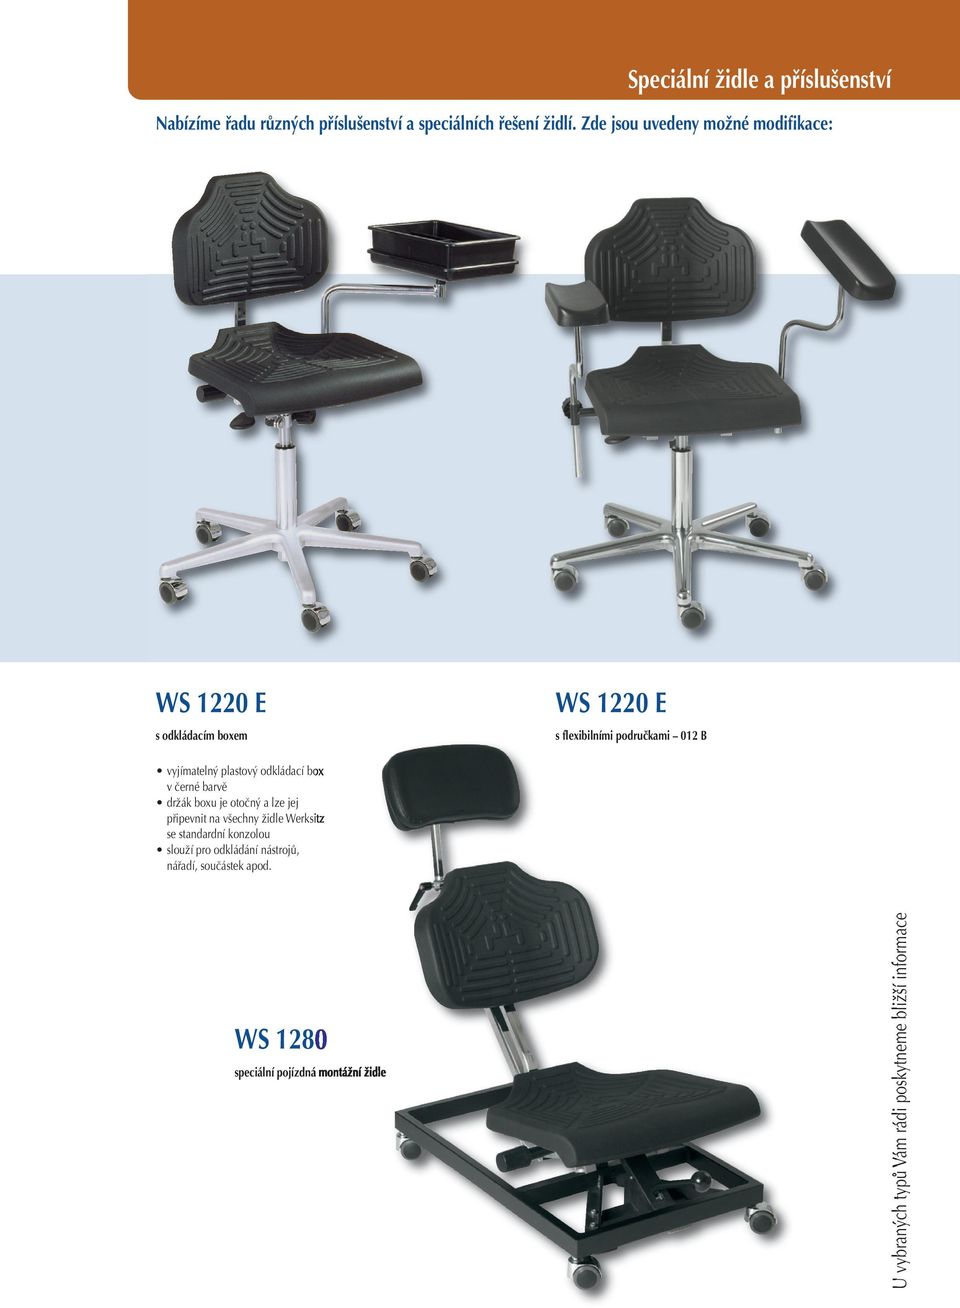 plastový odkládací box v černé barvě držák boxu je otočný a lze jej připevnit na všechny židle Werksitz se standardní